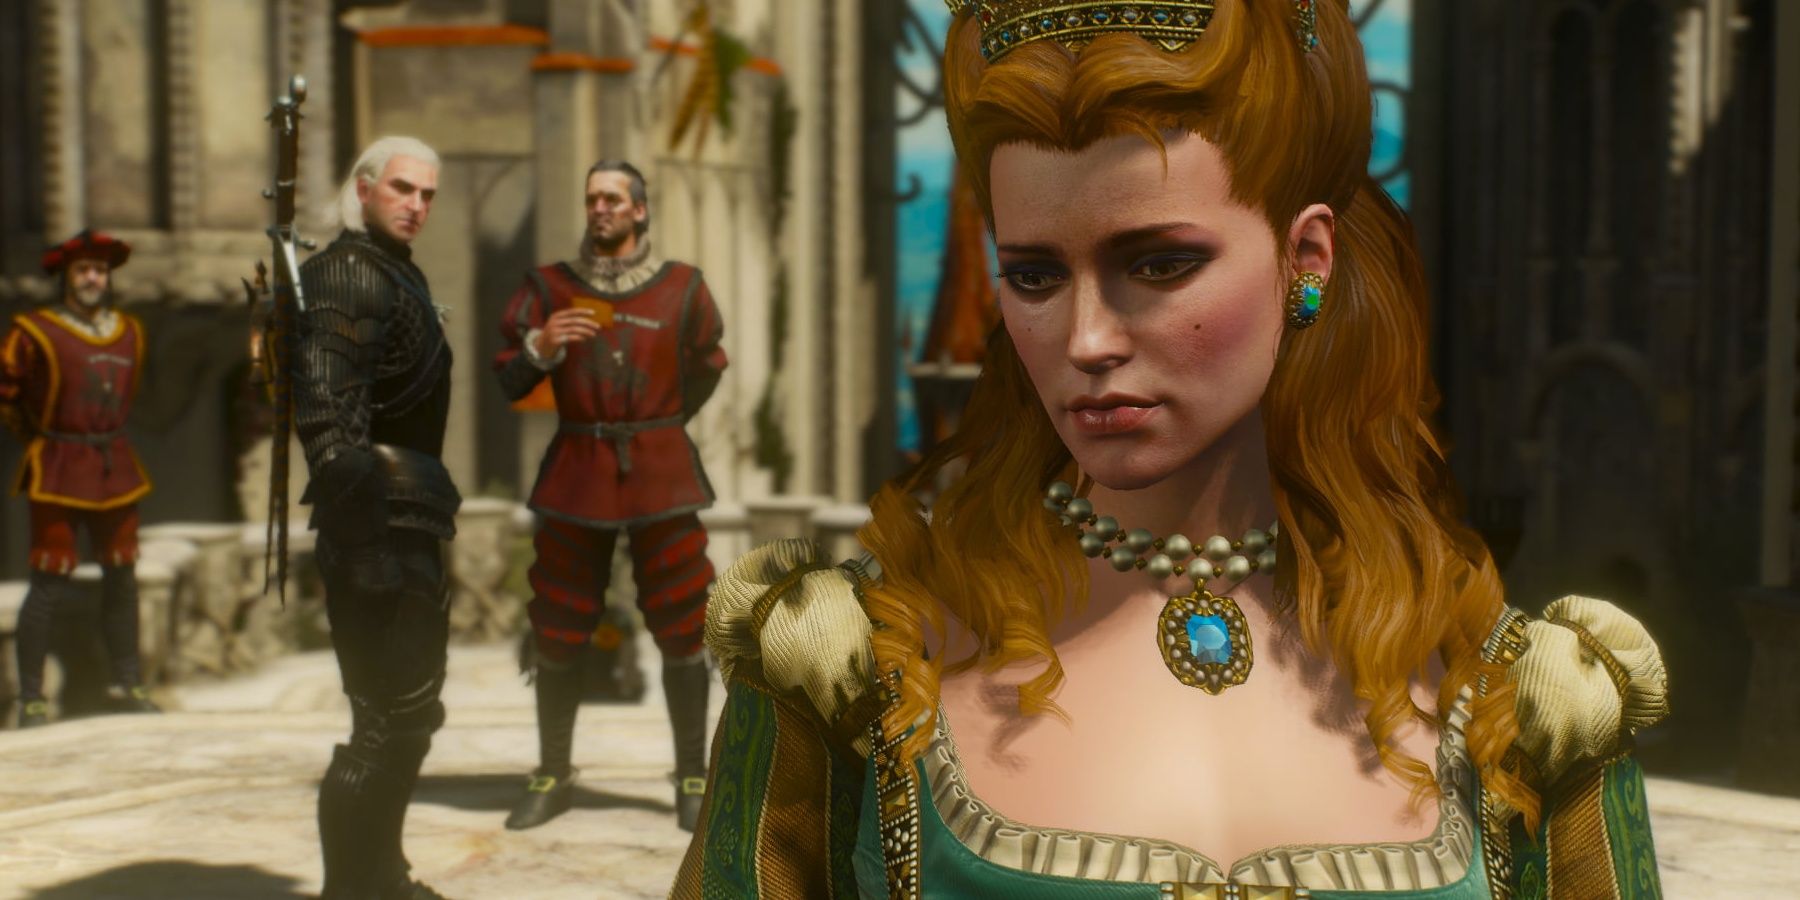 Anna Henrietta with Geralt in the background